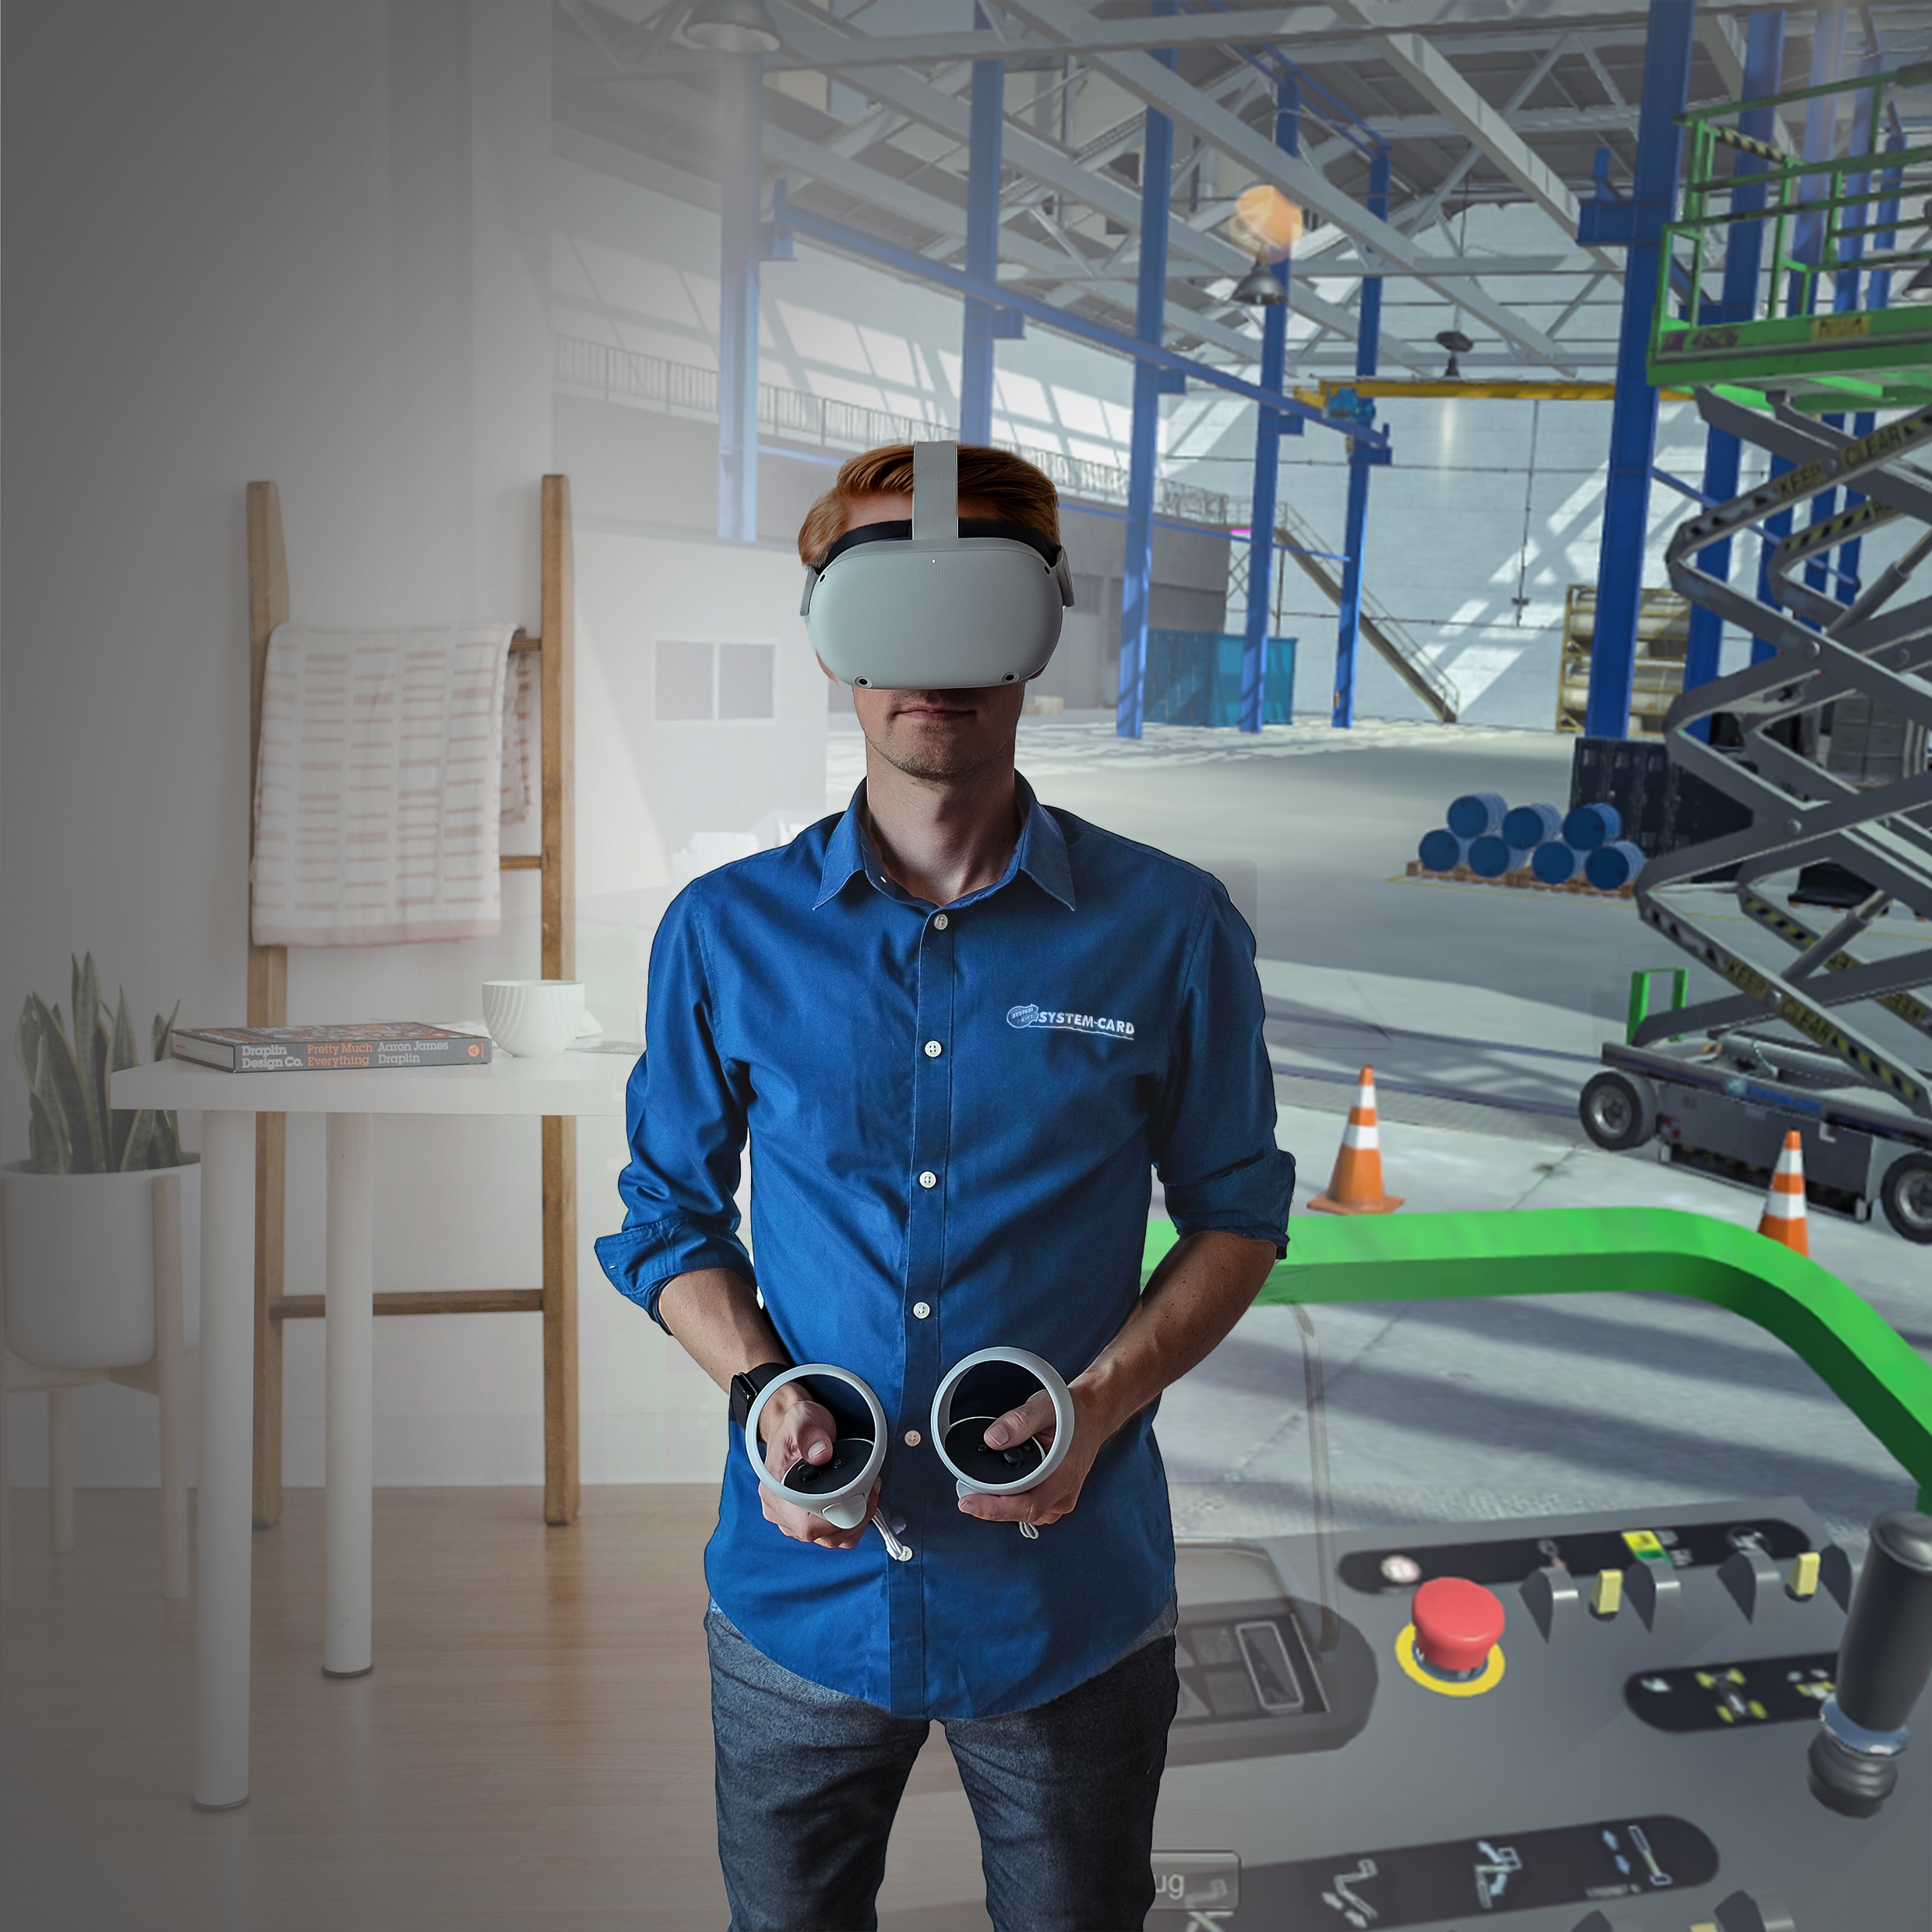  	 Per VR-Brille und Controllern lässt sich ein realitätsnahes Arbeitsumfeld zu Schulungszwecken darstellen.